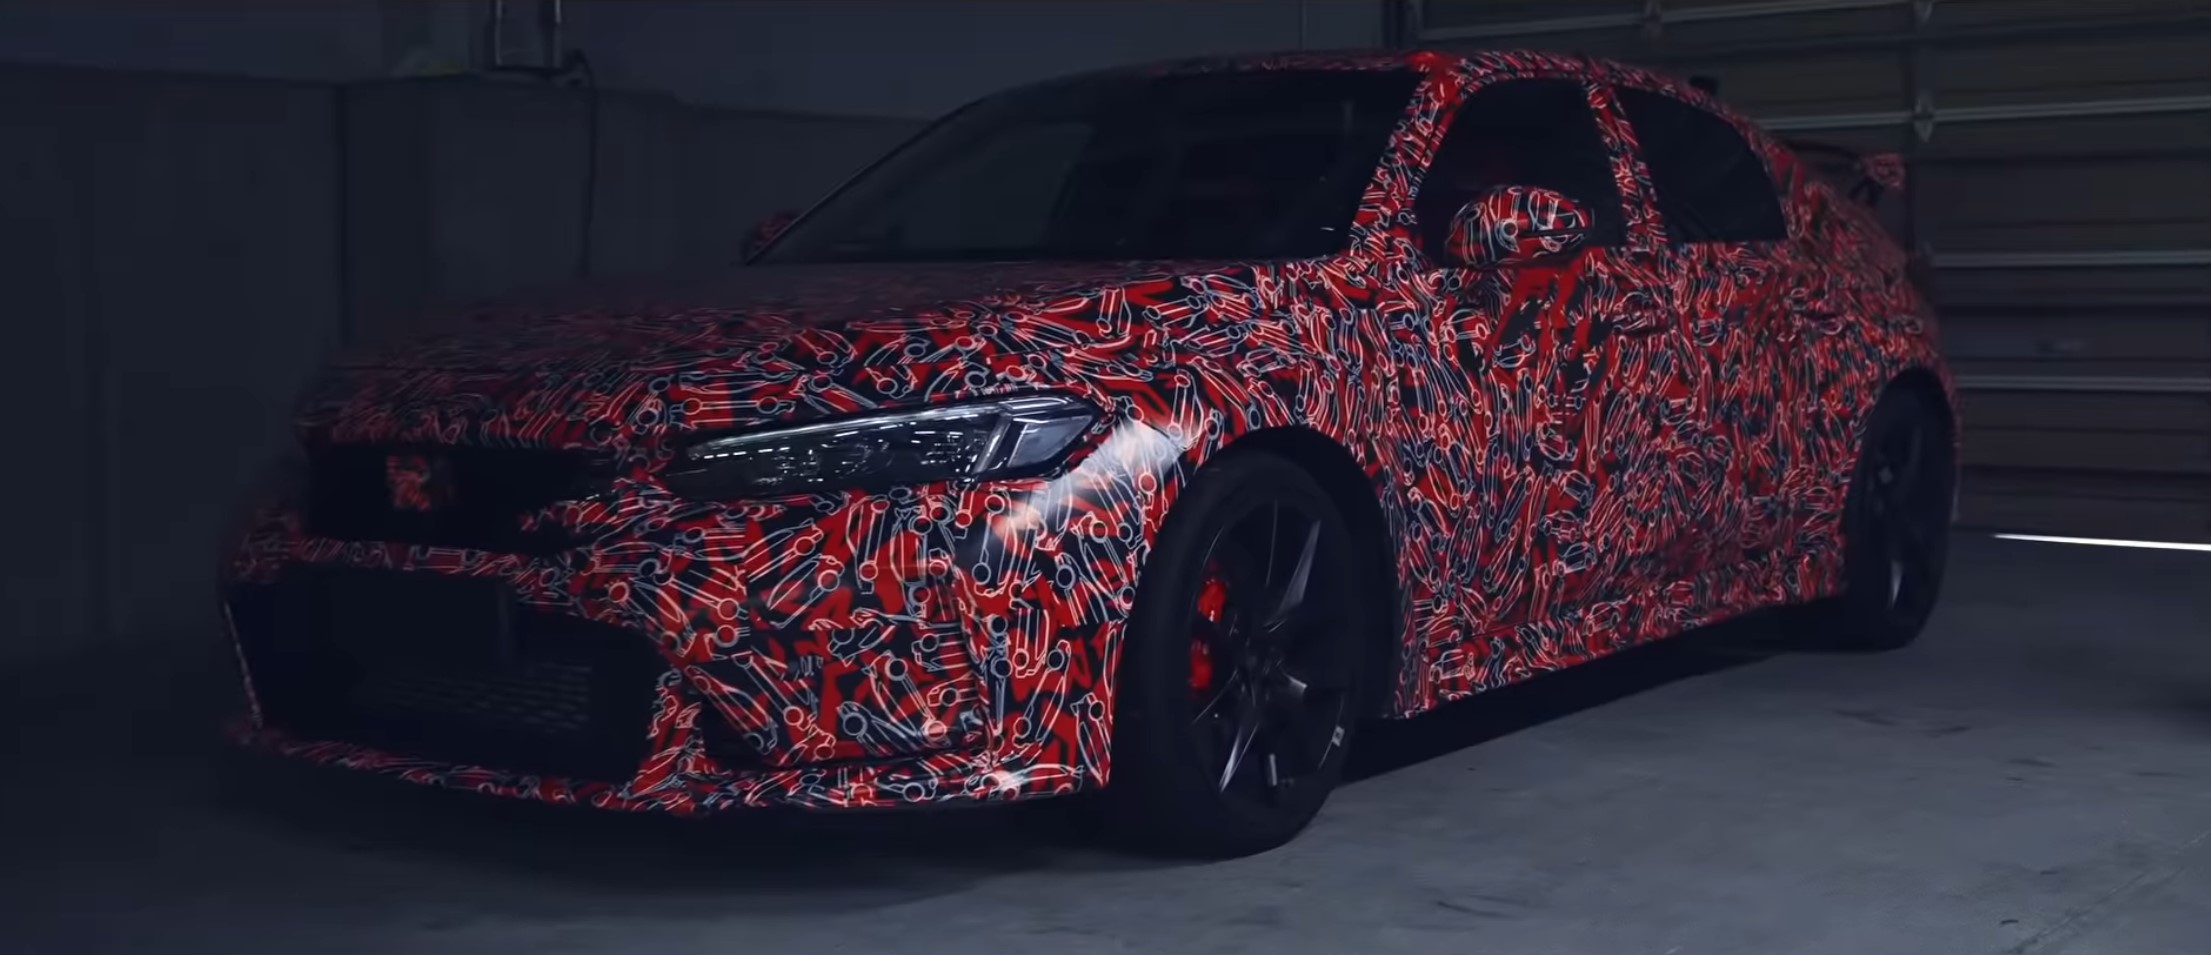 2022 Honda Civic video teaser 1